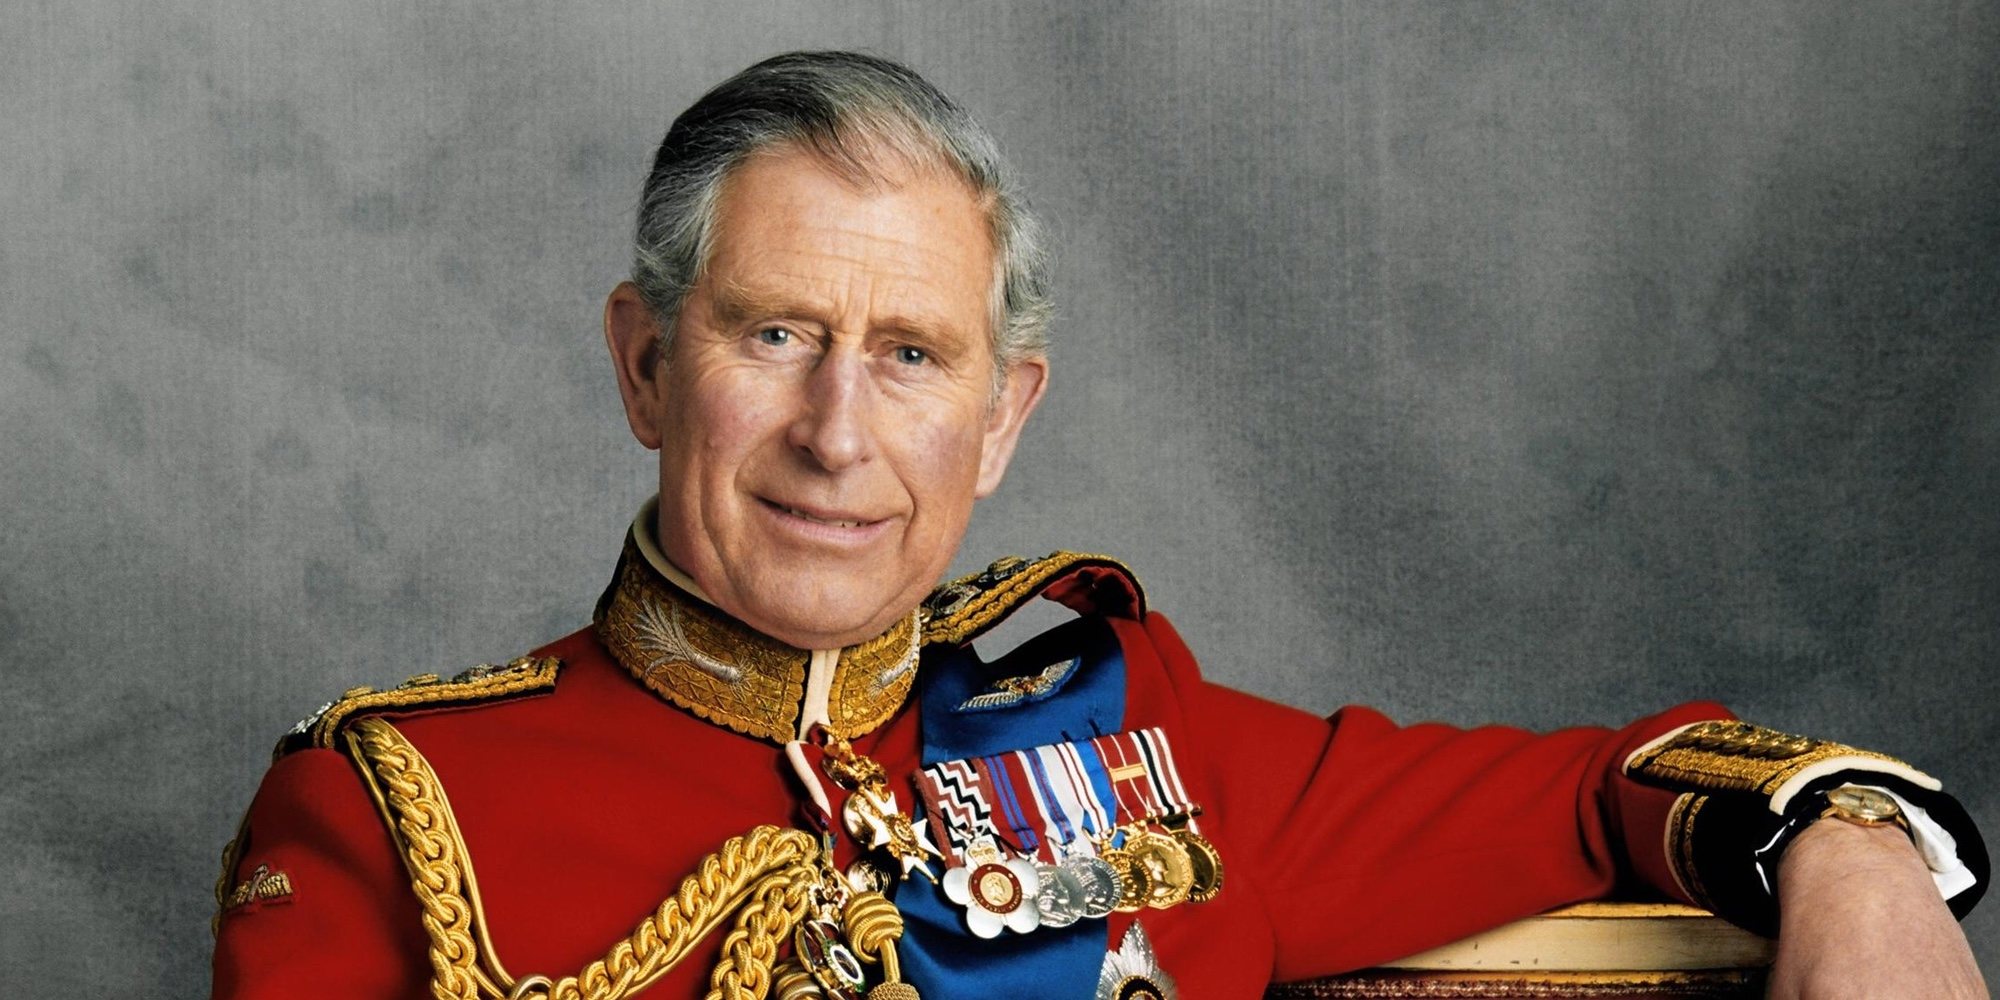 El Príncipe Carlos de Inglaterra en 7 dramas y comedias: así es el eterno Heredero al Trono